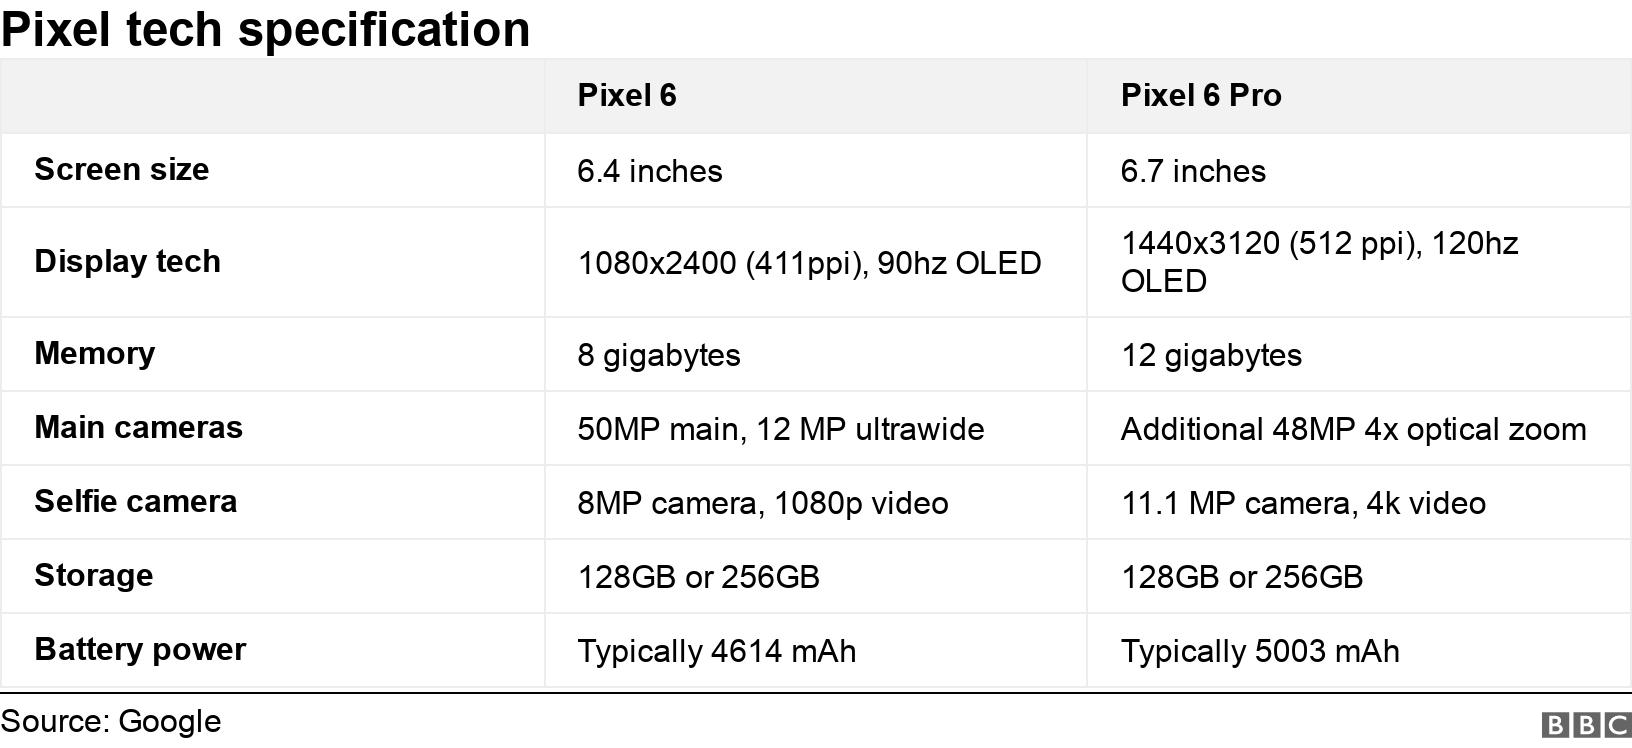 Pixel tech specification. . .